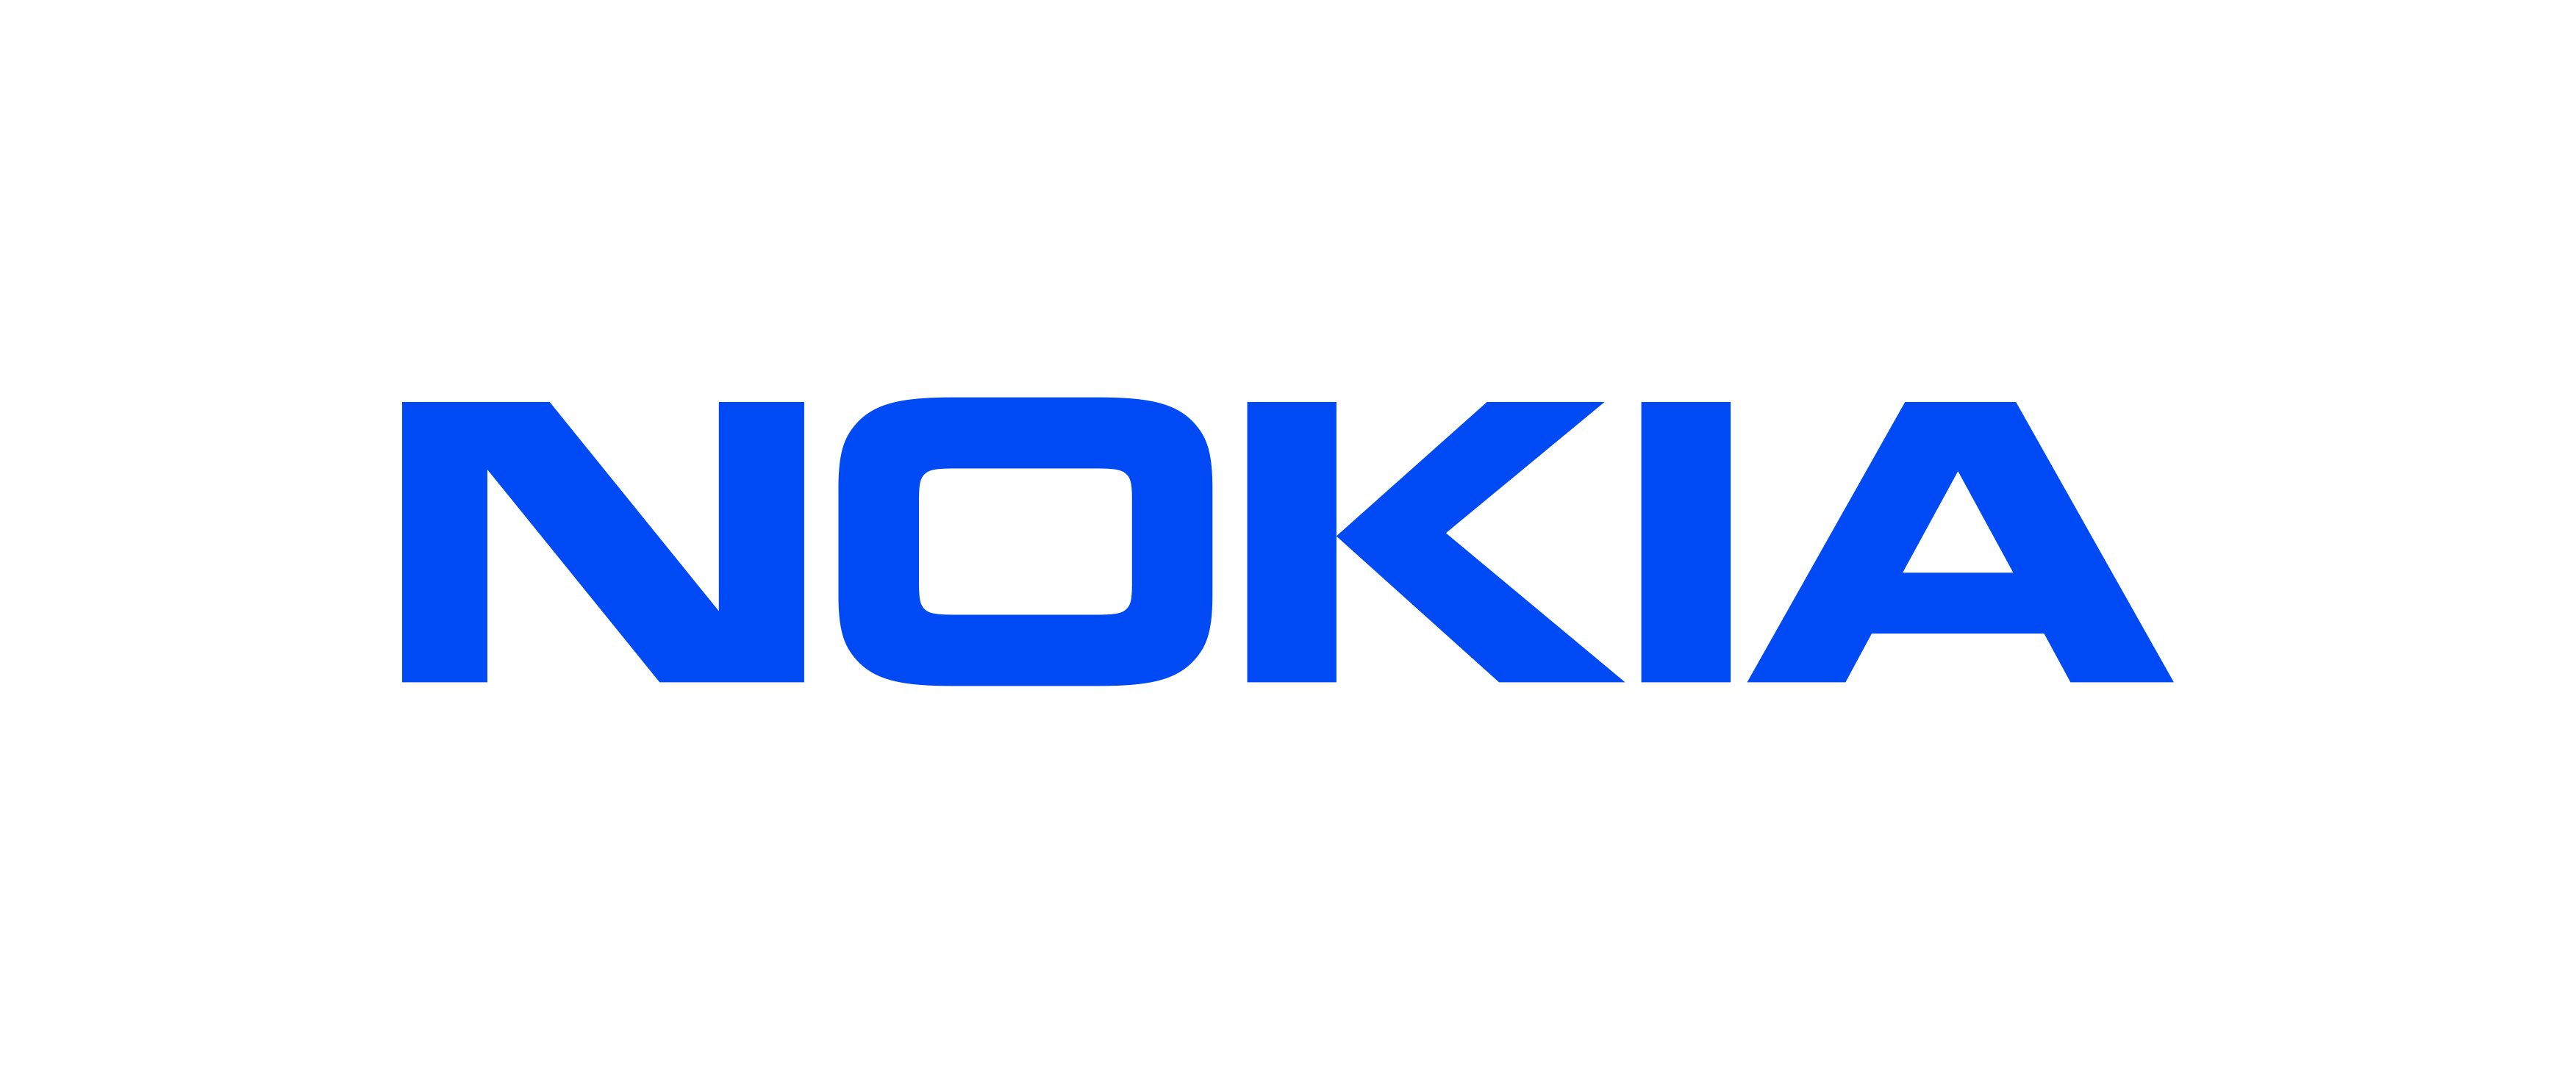 Nokia : Une expérience immersive grâce à un réseau 5G privé